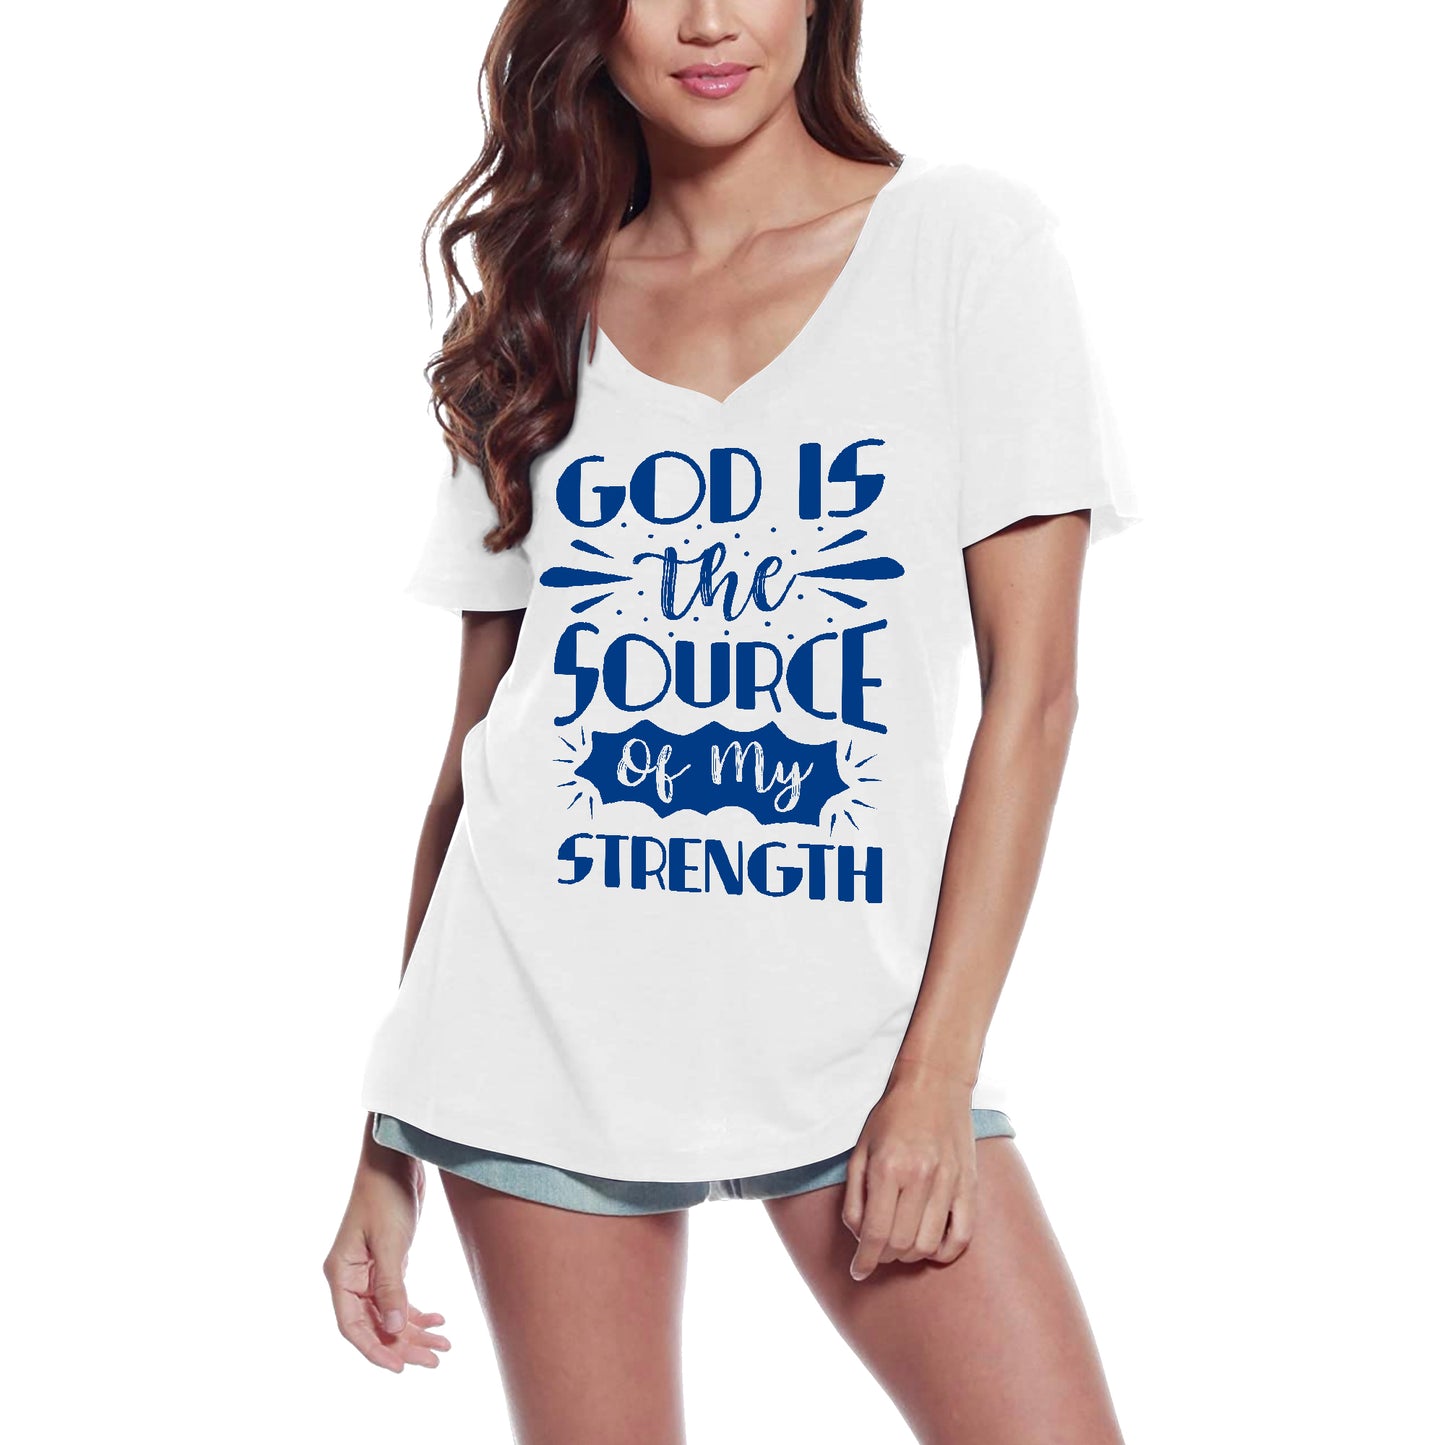 ULTRABASIC Damen T-Shirt Gott ist die Quelle meiner Stärke – Motivationsshirt